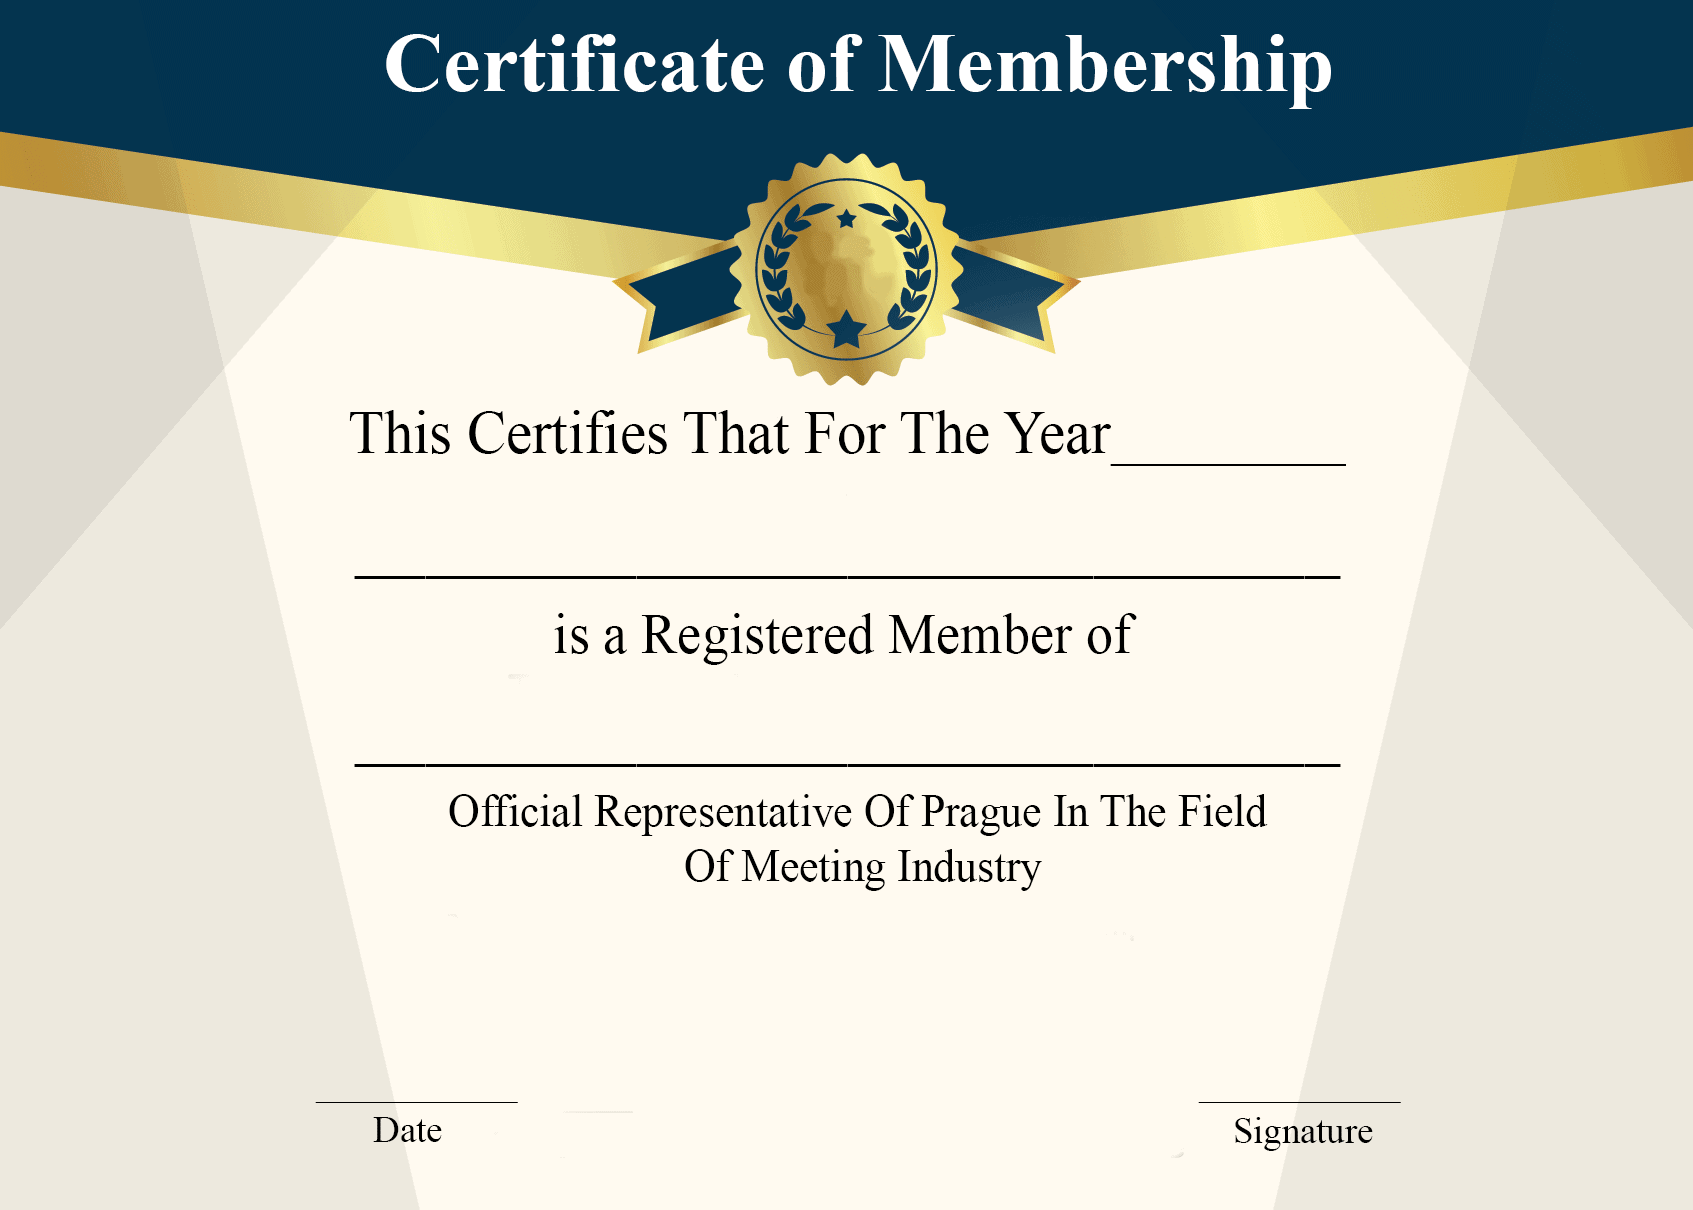 Certificate of Membership Download